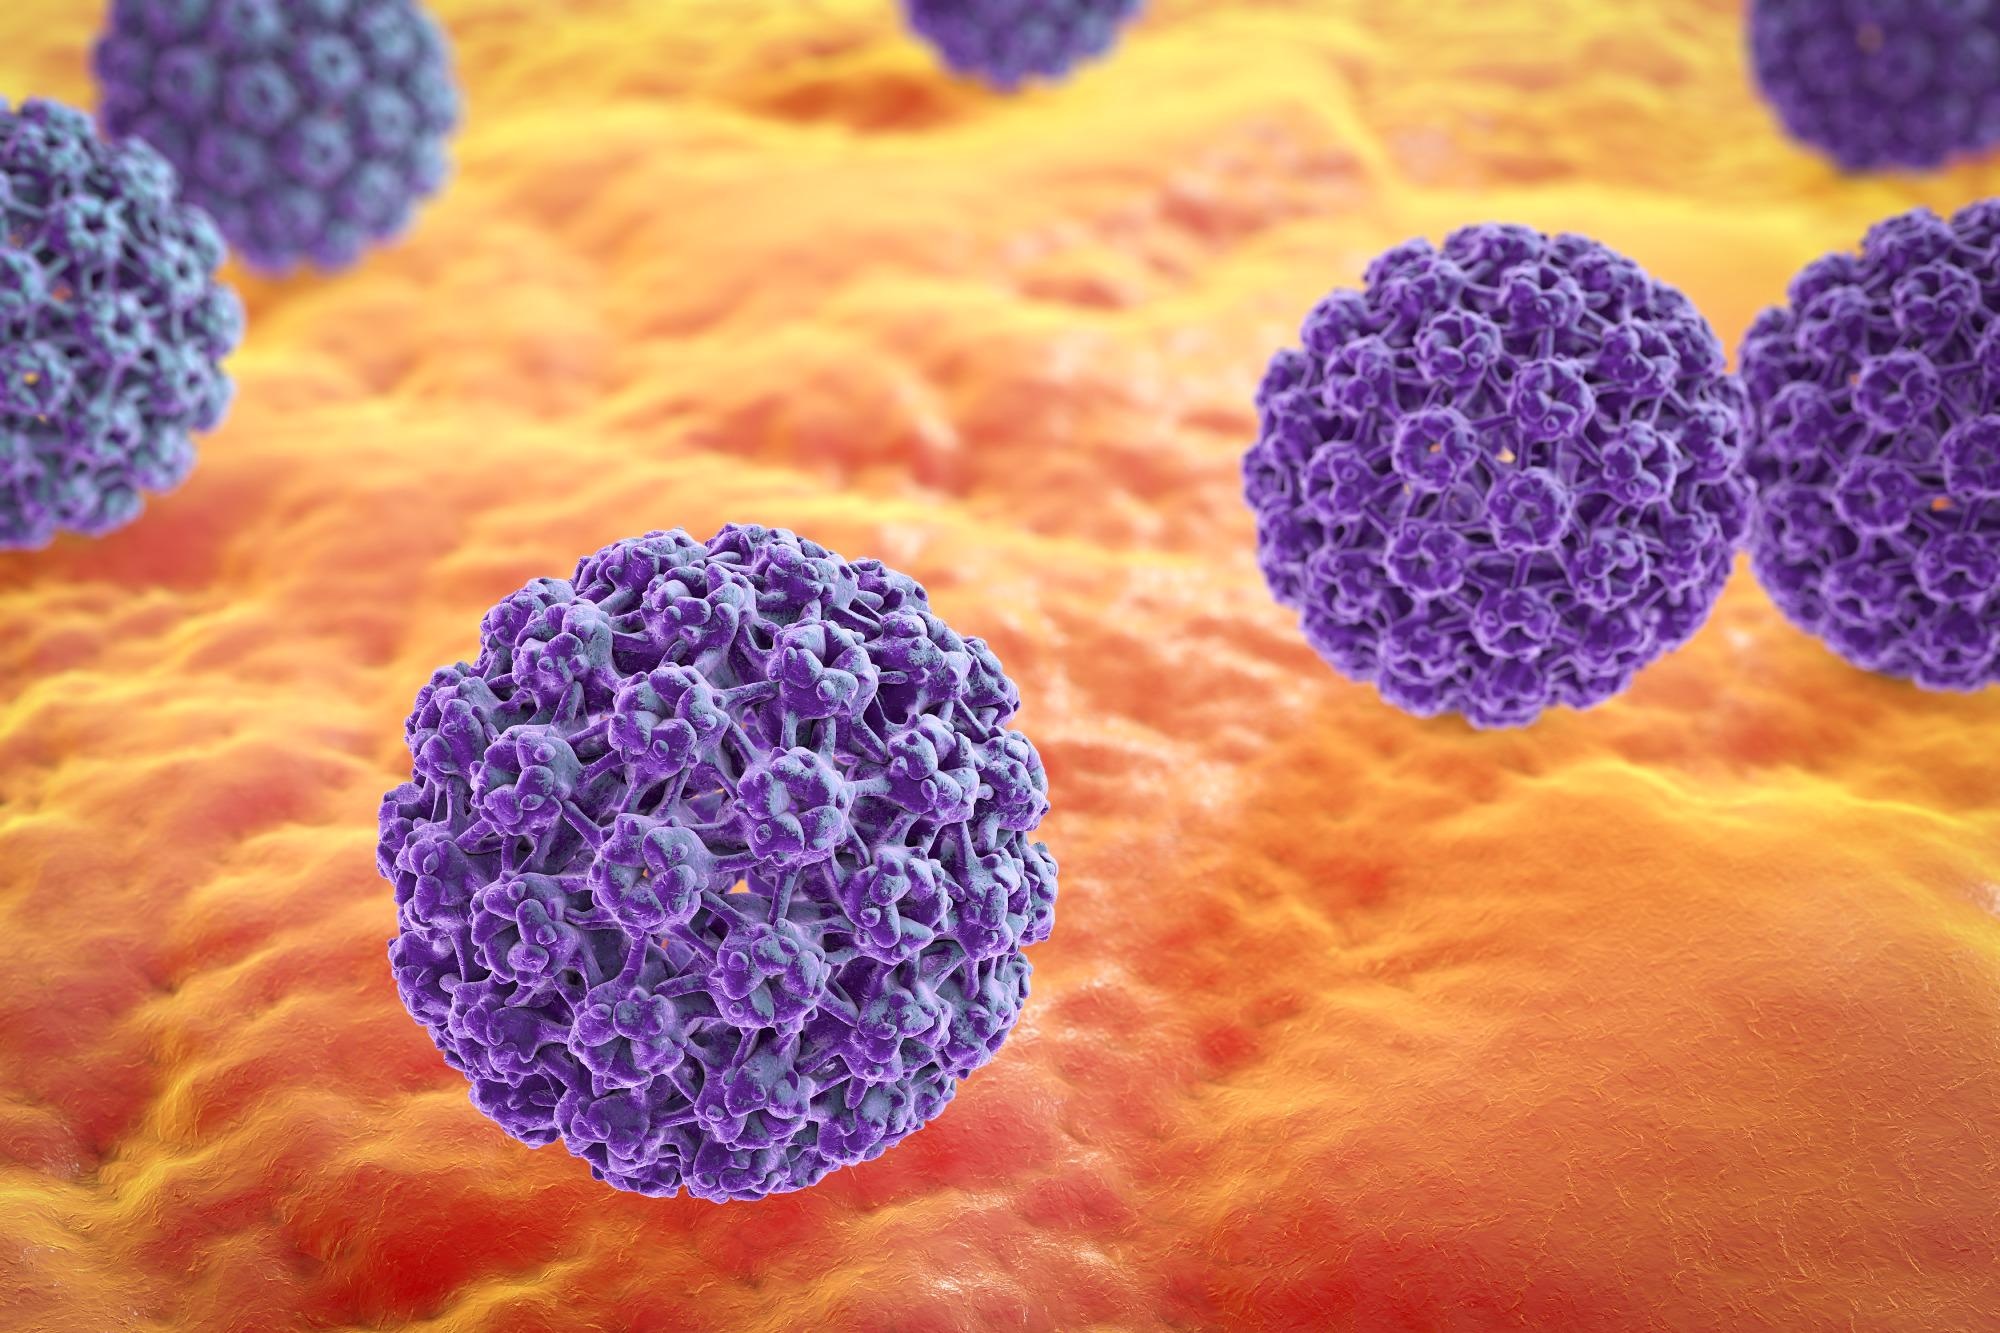 Human papillomavirus. Image Credit: Kateryna Kon / Shutterstock